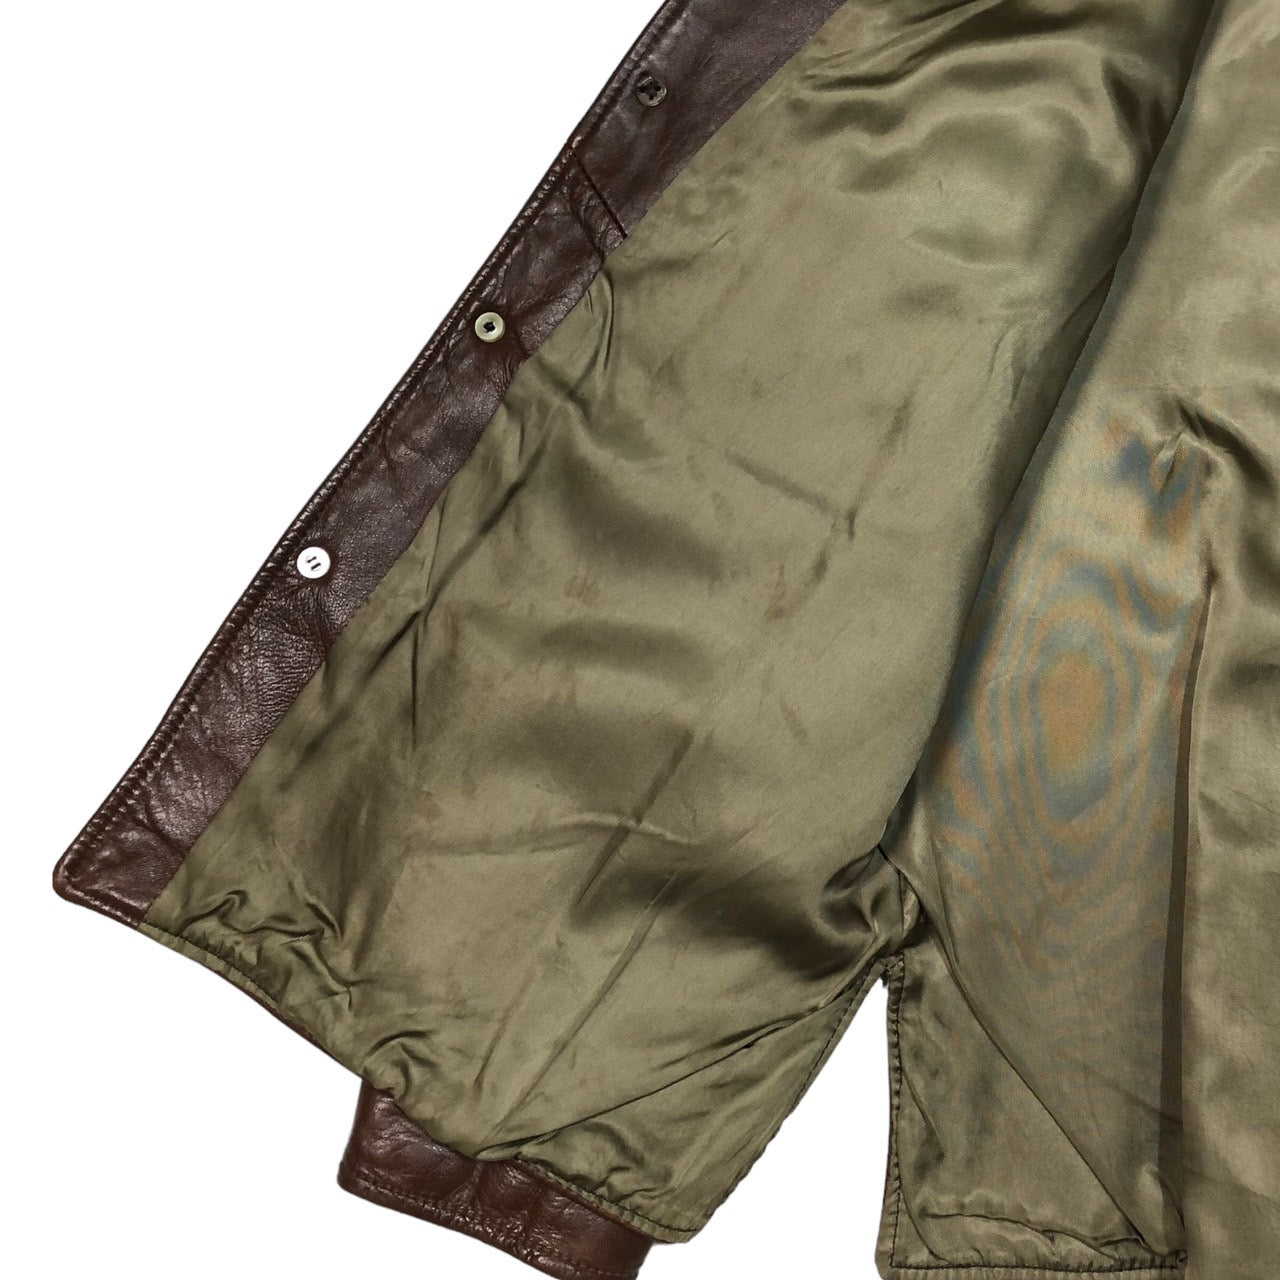 californian(カルフォルニア) 70's ヴィンテージレザーシャツジャケット 42(XL程度) ブラウン 70年代